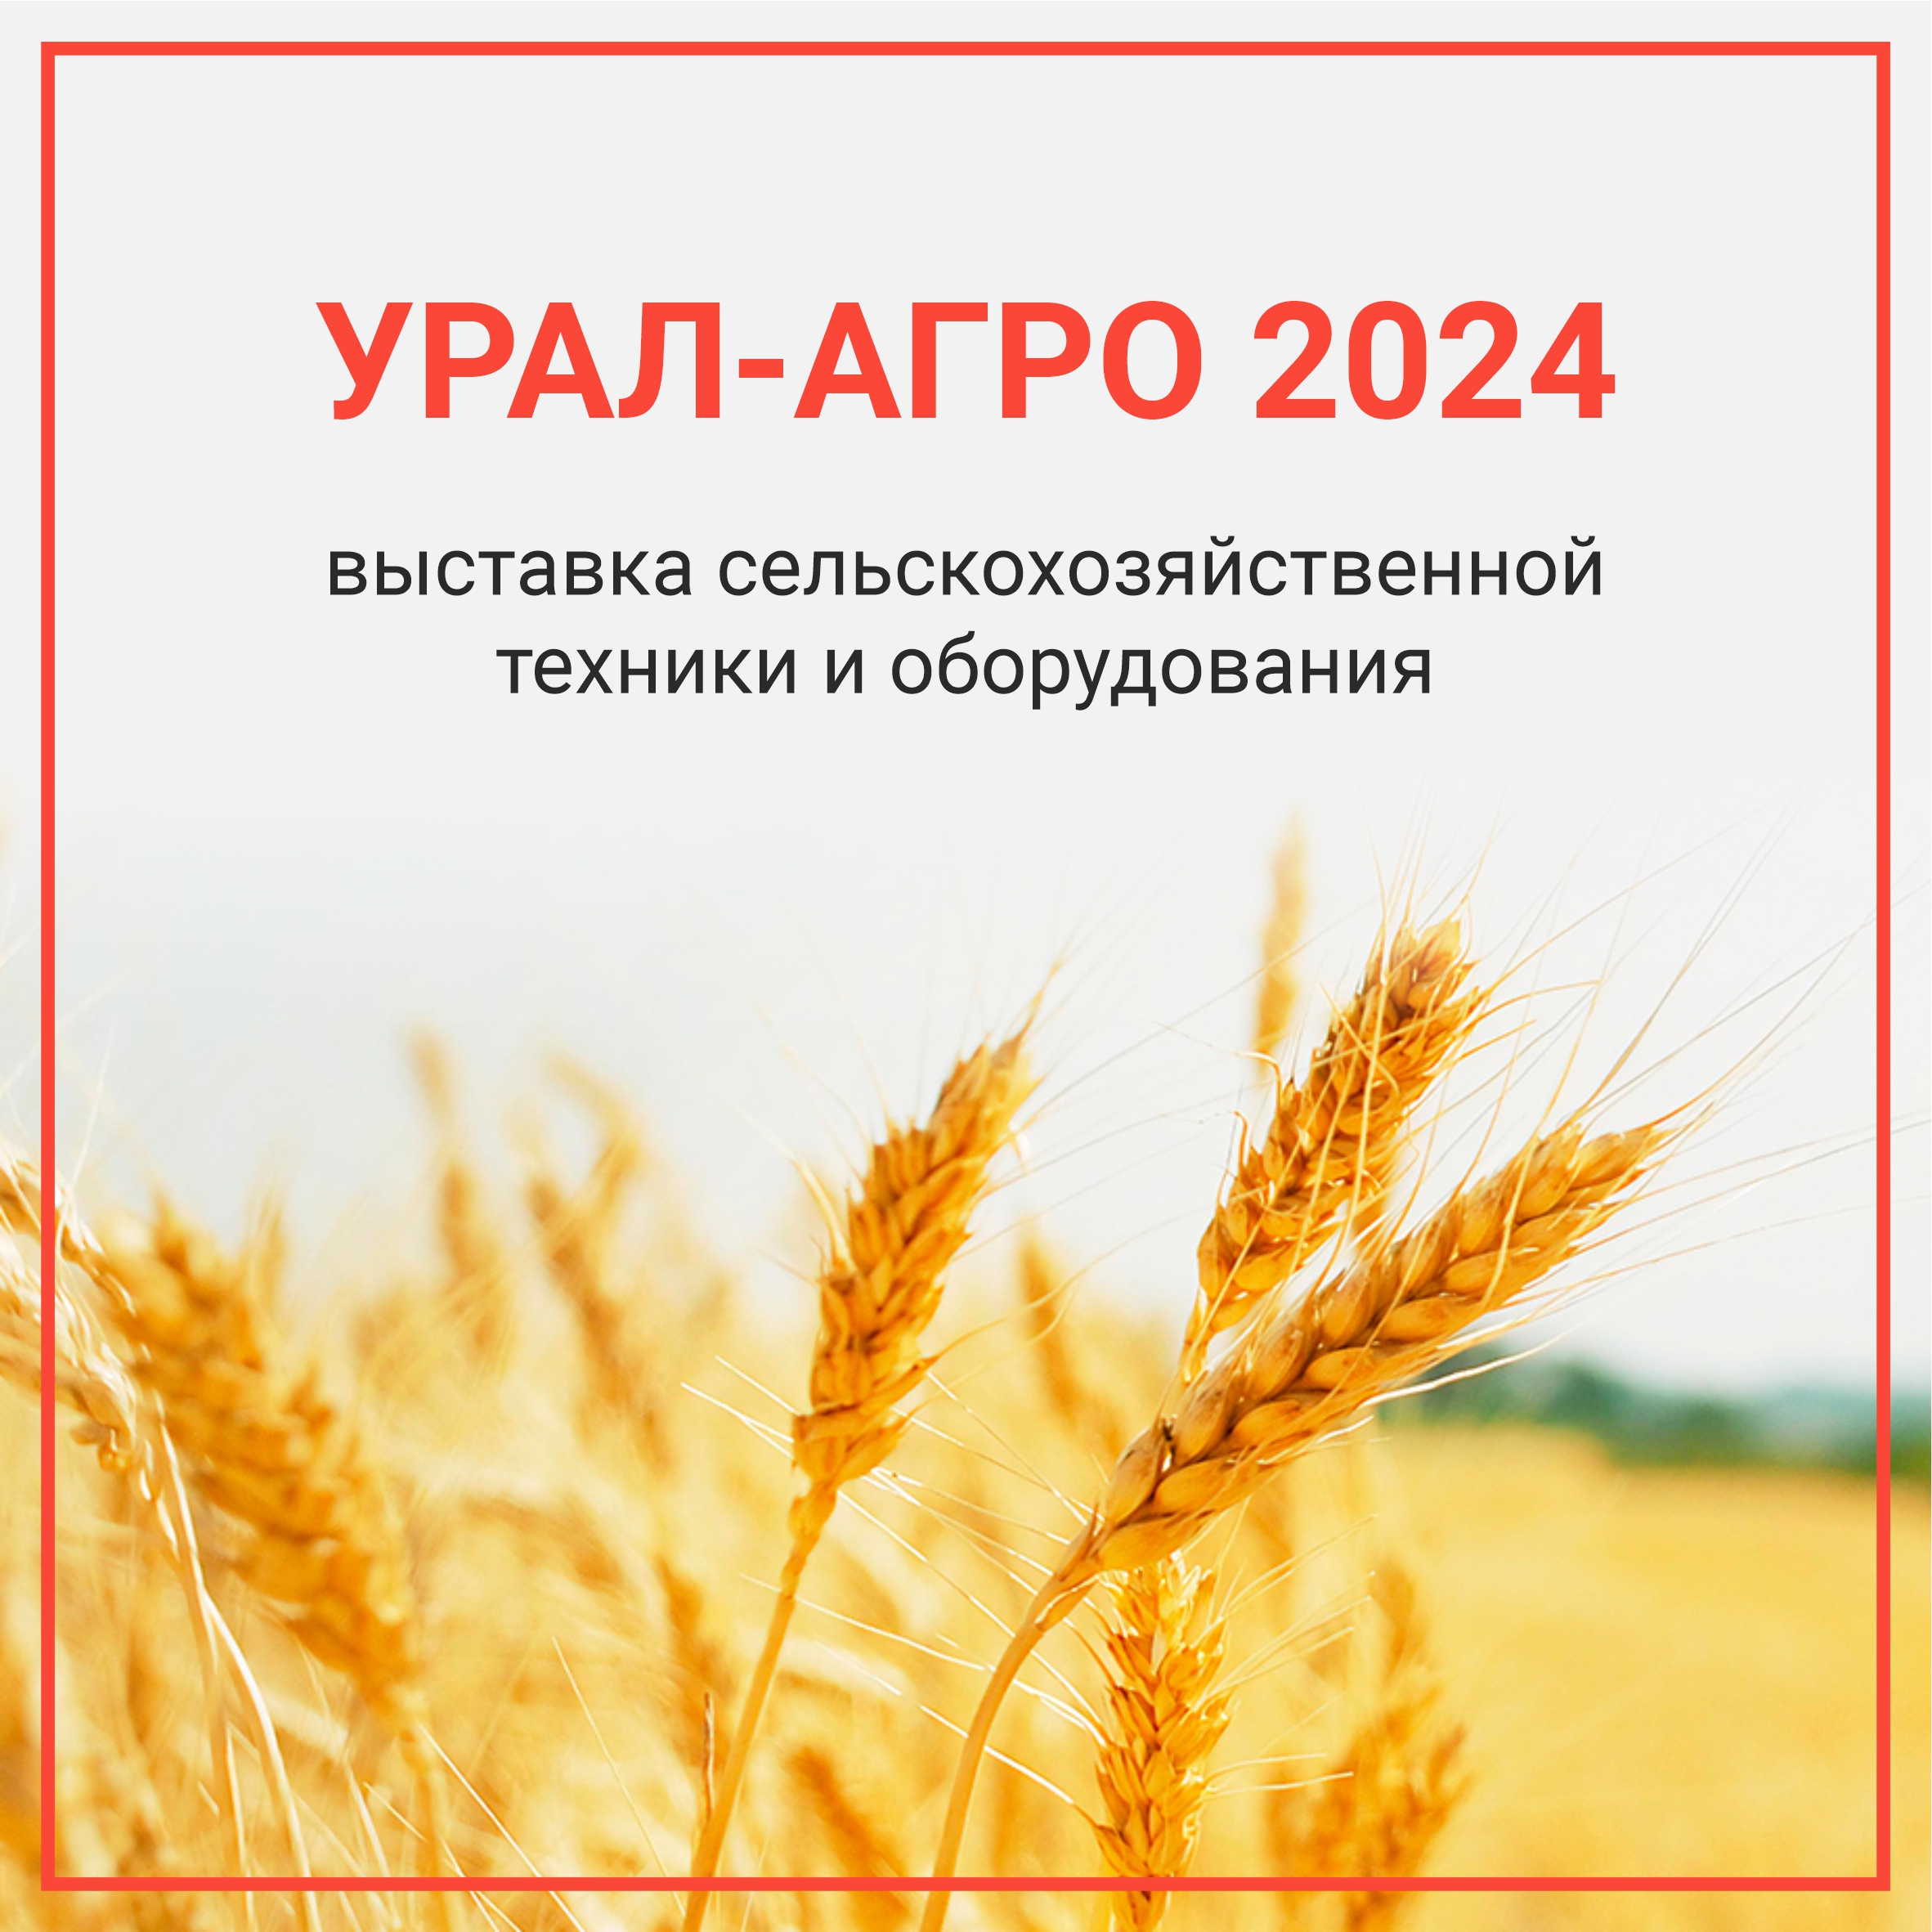 Выставка сельскохозяйственной техники и оборудования «Урал-АГРО-2024»